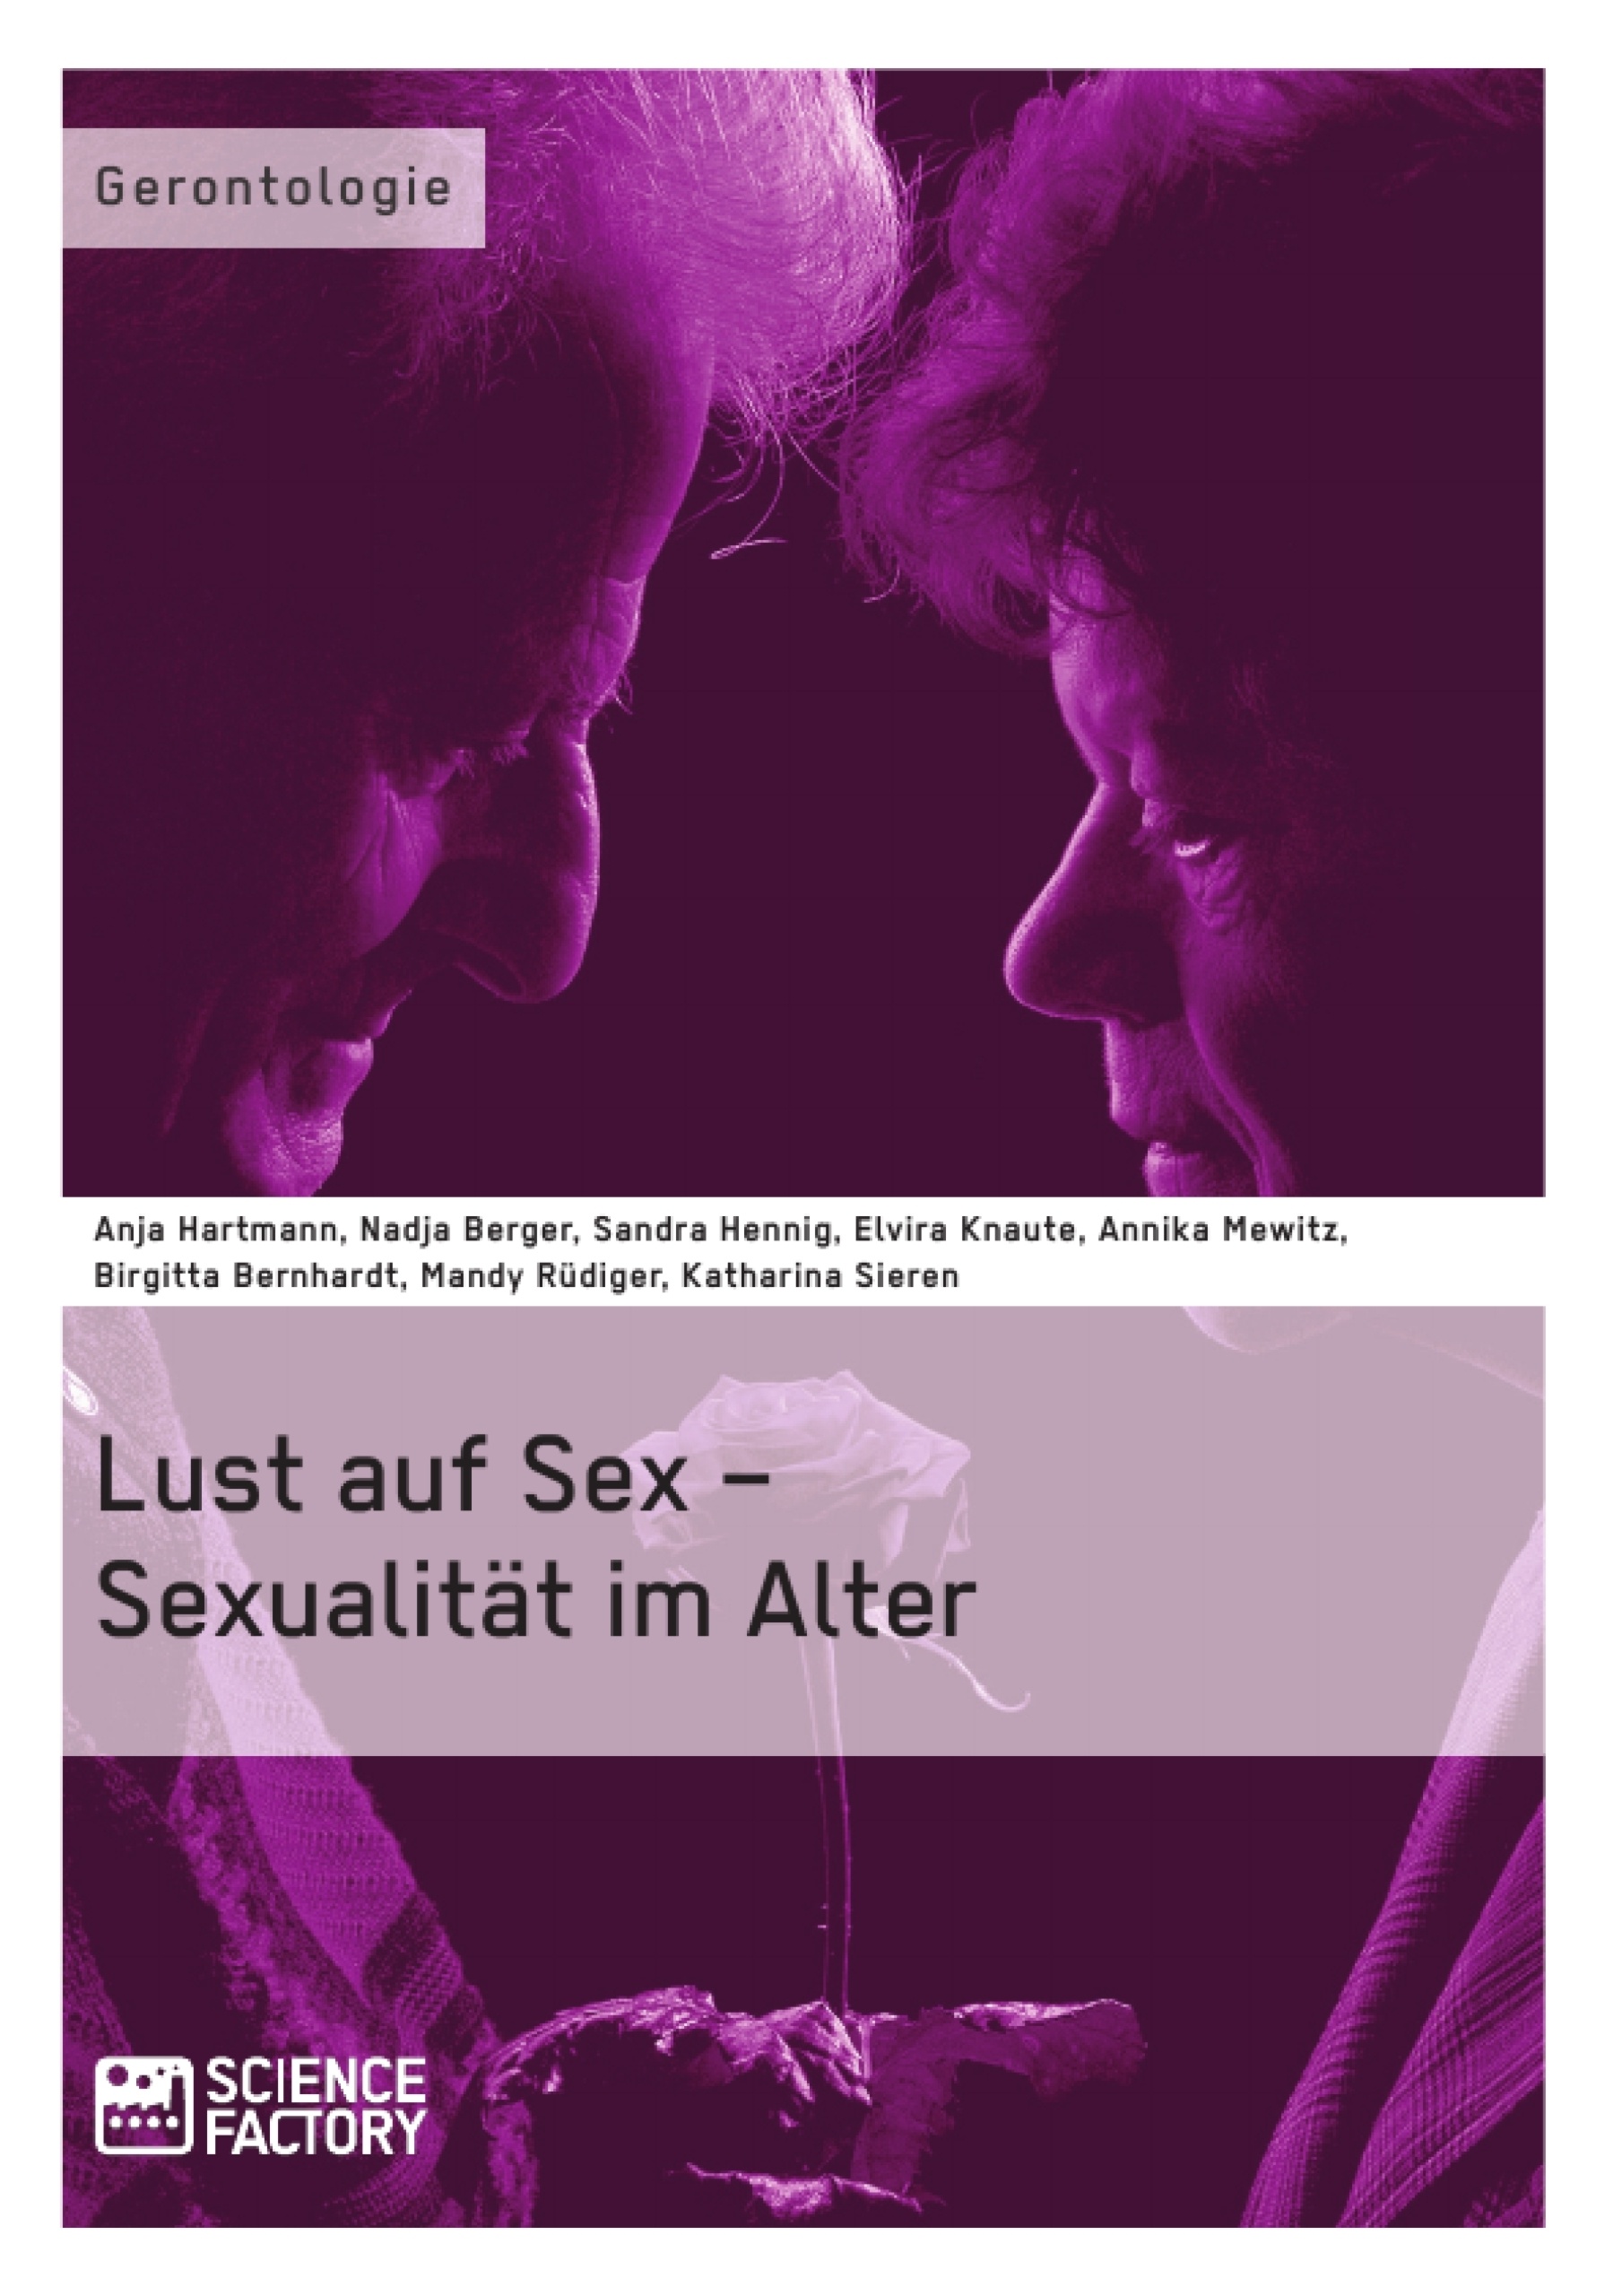 Title: Lust auf Sex – Sexualität im Alter